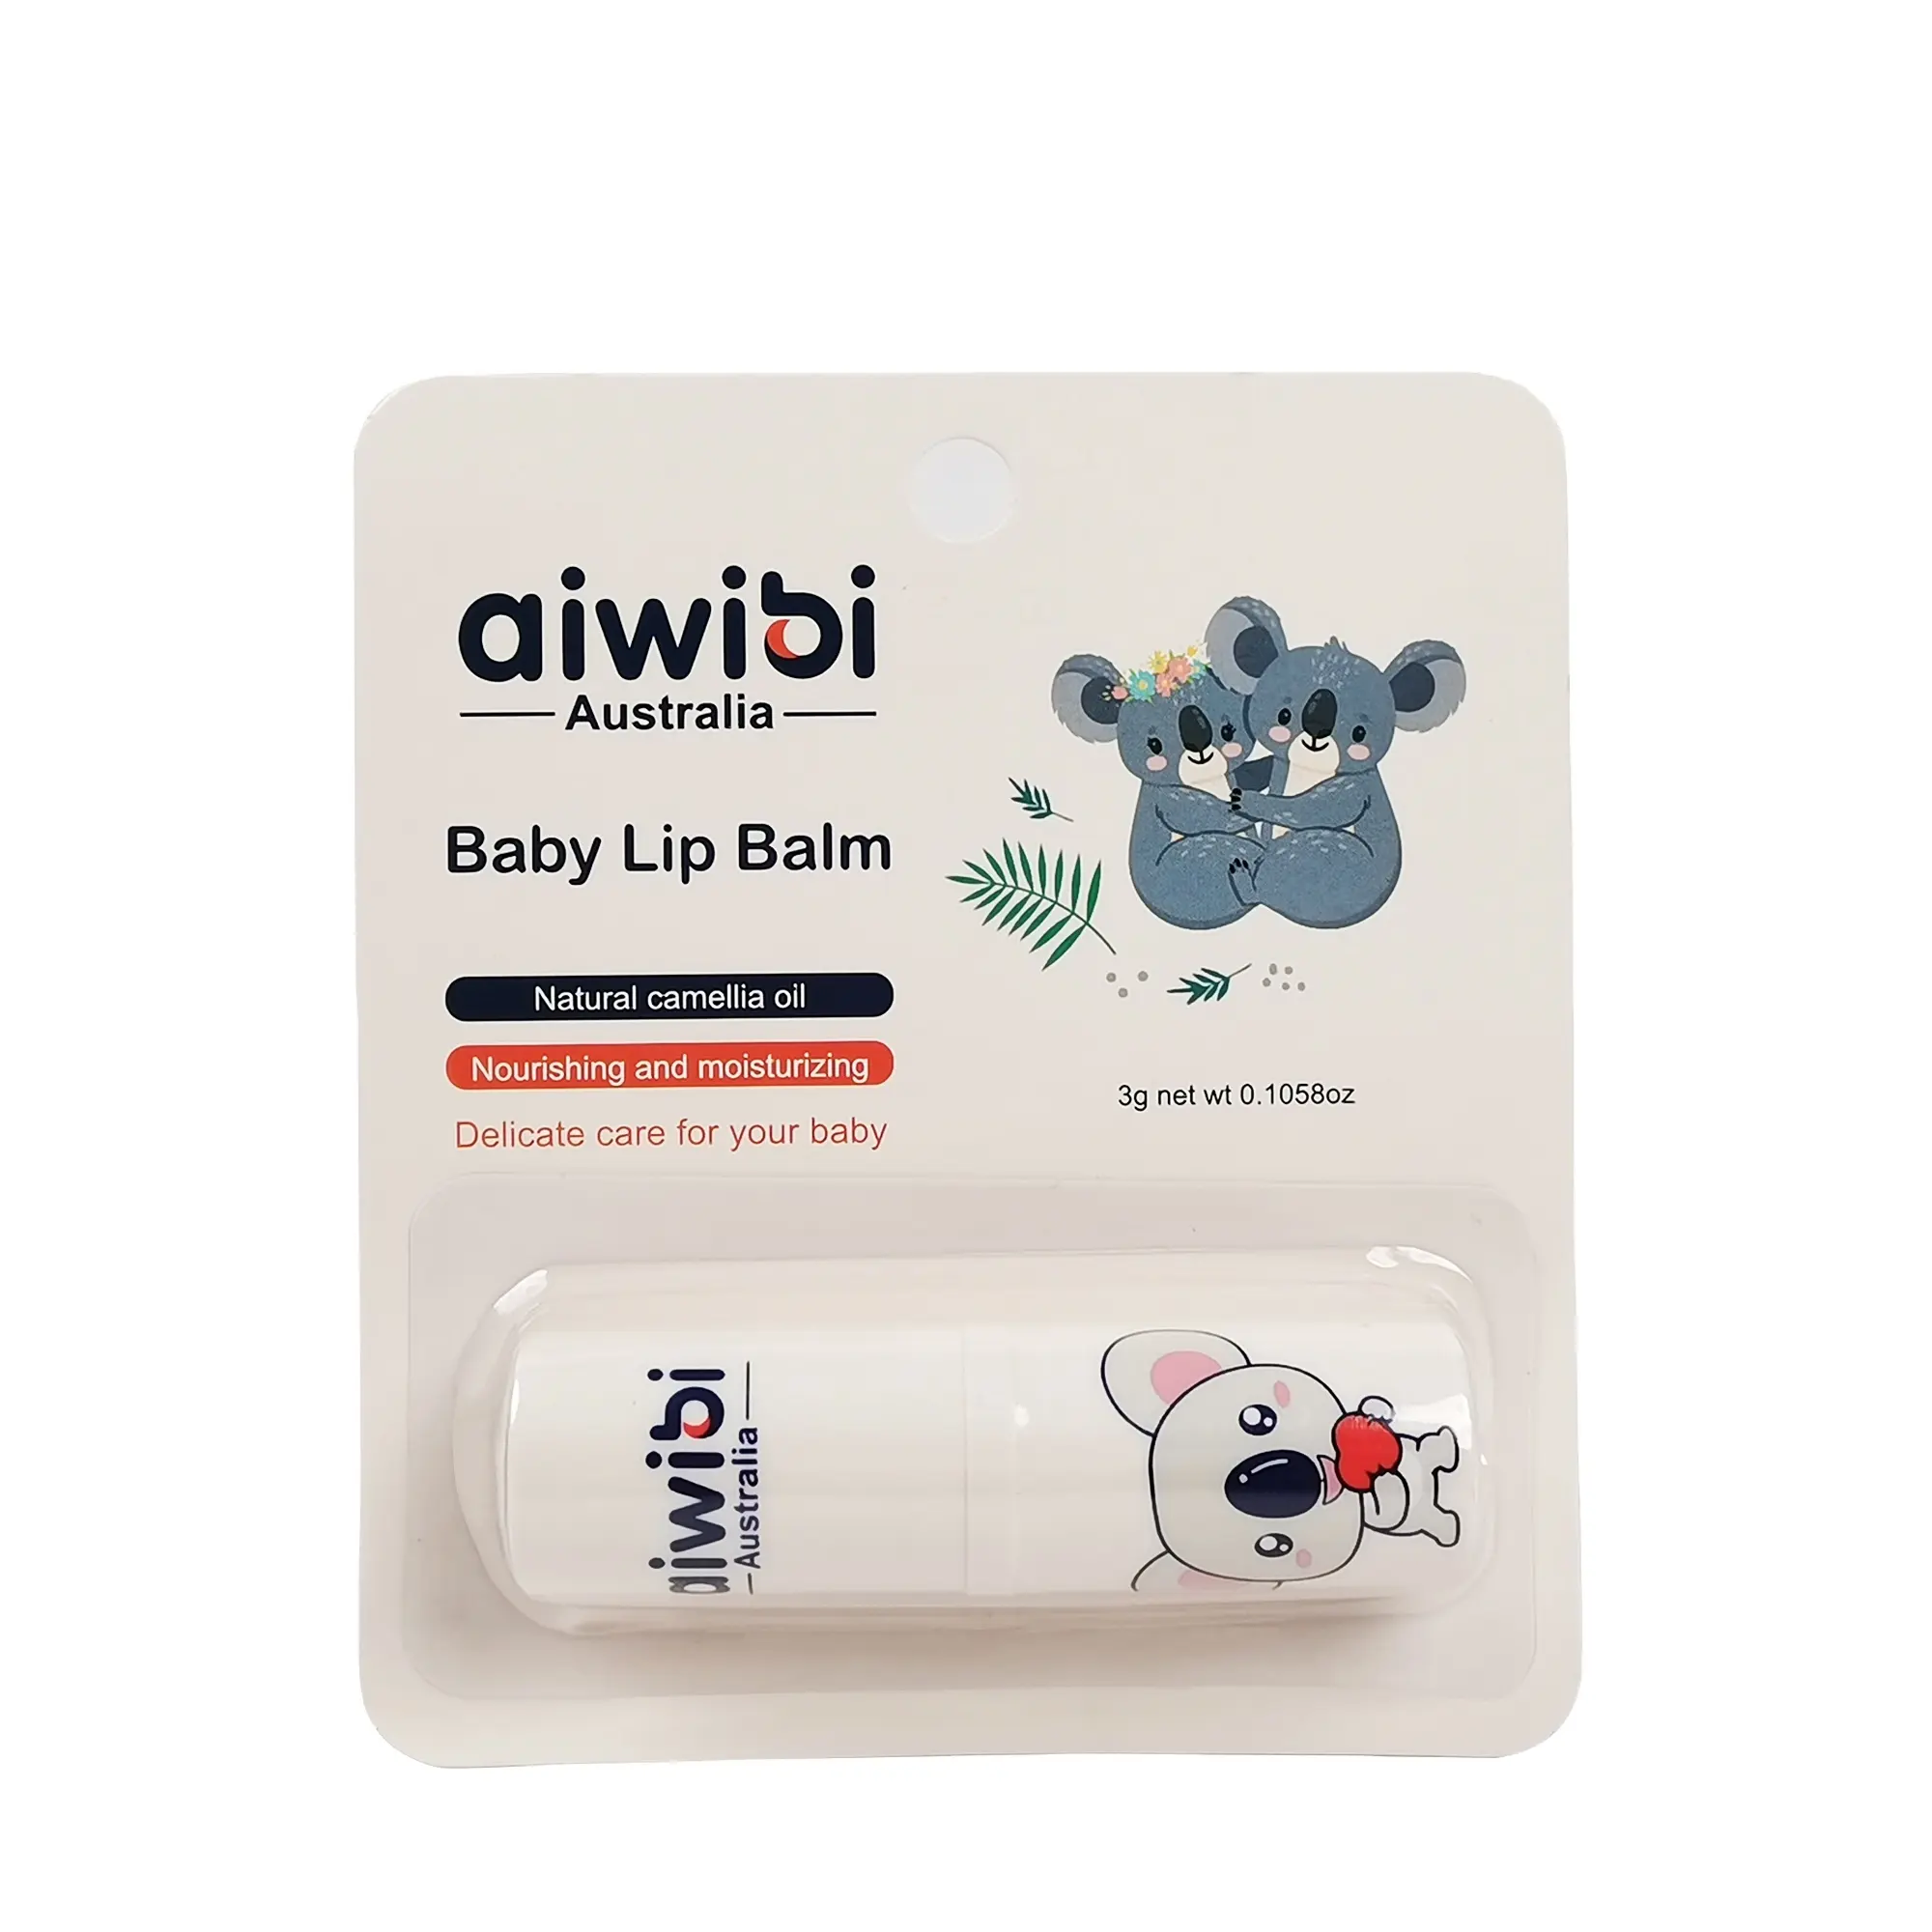 Aiwibi – baume à lèvres pour bébé, matières premières naturelles, produits sûrs pour bébé, joli design Koala